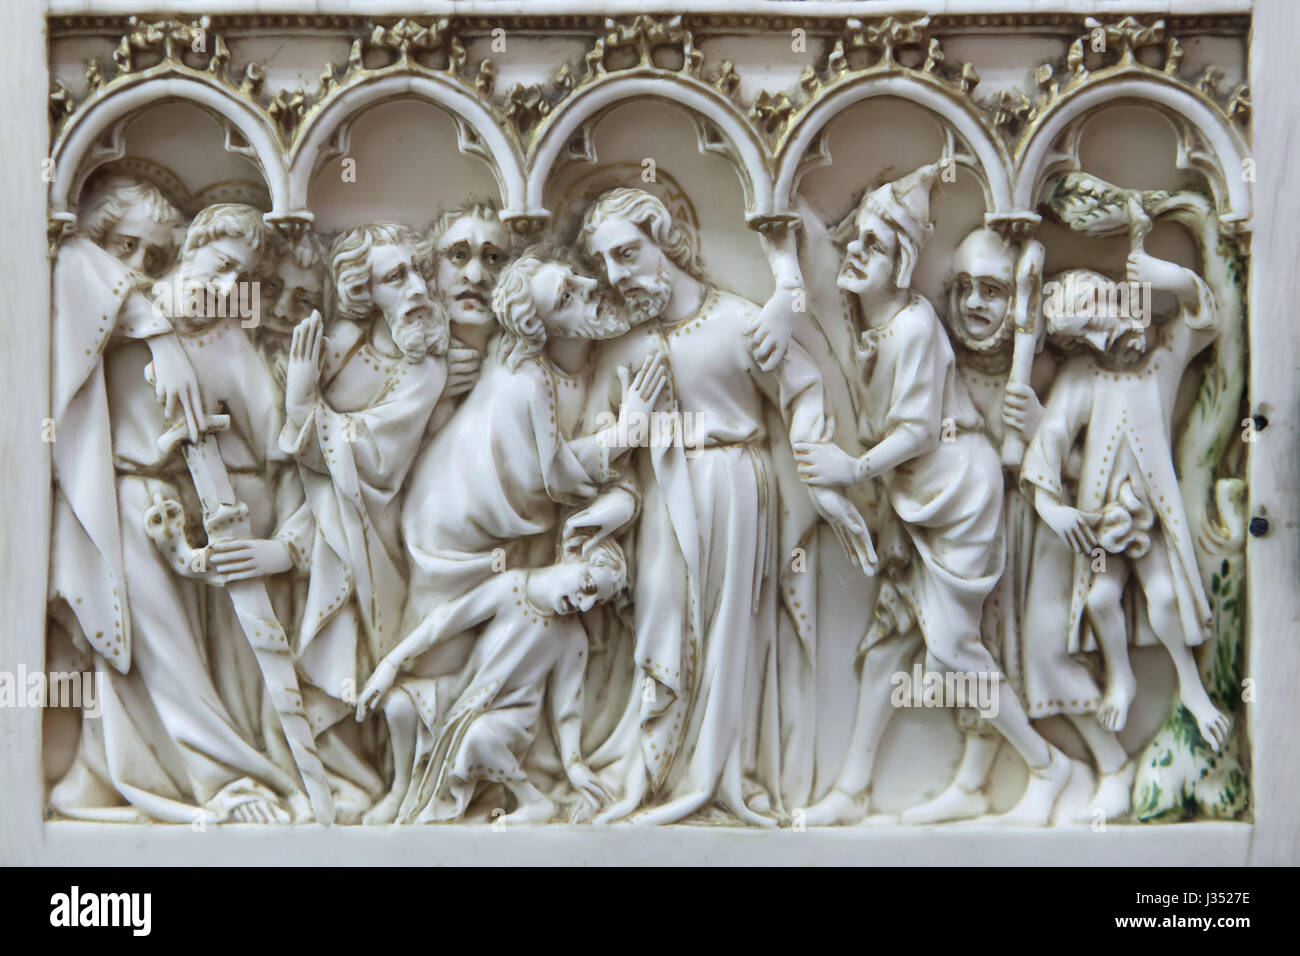 Baiser de Judas Iscariot. Détail de l'ivoire retable des scènes de la Passion du Christ daté de ca. 1375-1400 sur l'affichage dans le Musée des Beaux-Arts de Dijon (Musée des beaux-arts) à Dijon, Bourgogne, France. L'oreille de Malchus (L) et le suicide de Judas Iscariote (R) sont également représentés dans le groupe. Banque D'Images